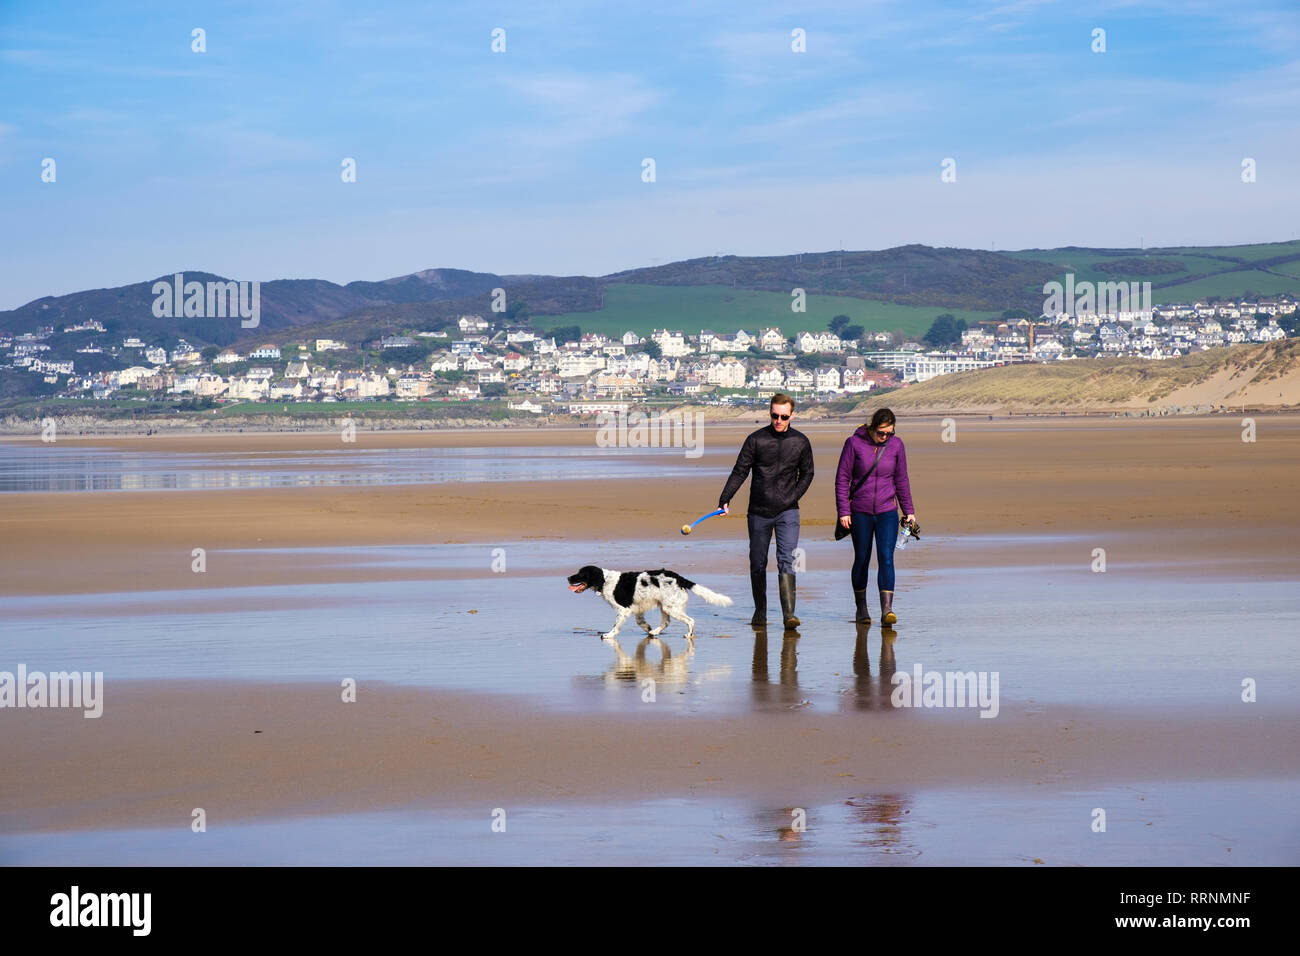 Un couple millénaire de personnes marchant un chien Springer Spaniel sur une mer de sable calme à marée basse en hiver. Woolacombe North Devon Angleterre Royaume-Uni Grande-Bretagne Banque D'Images